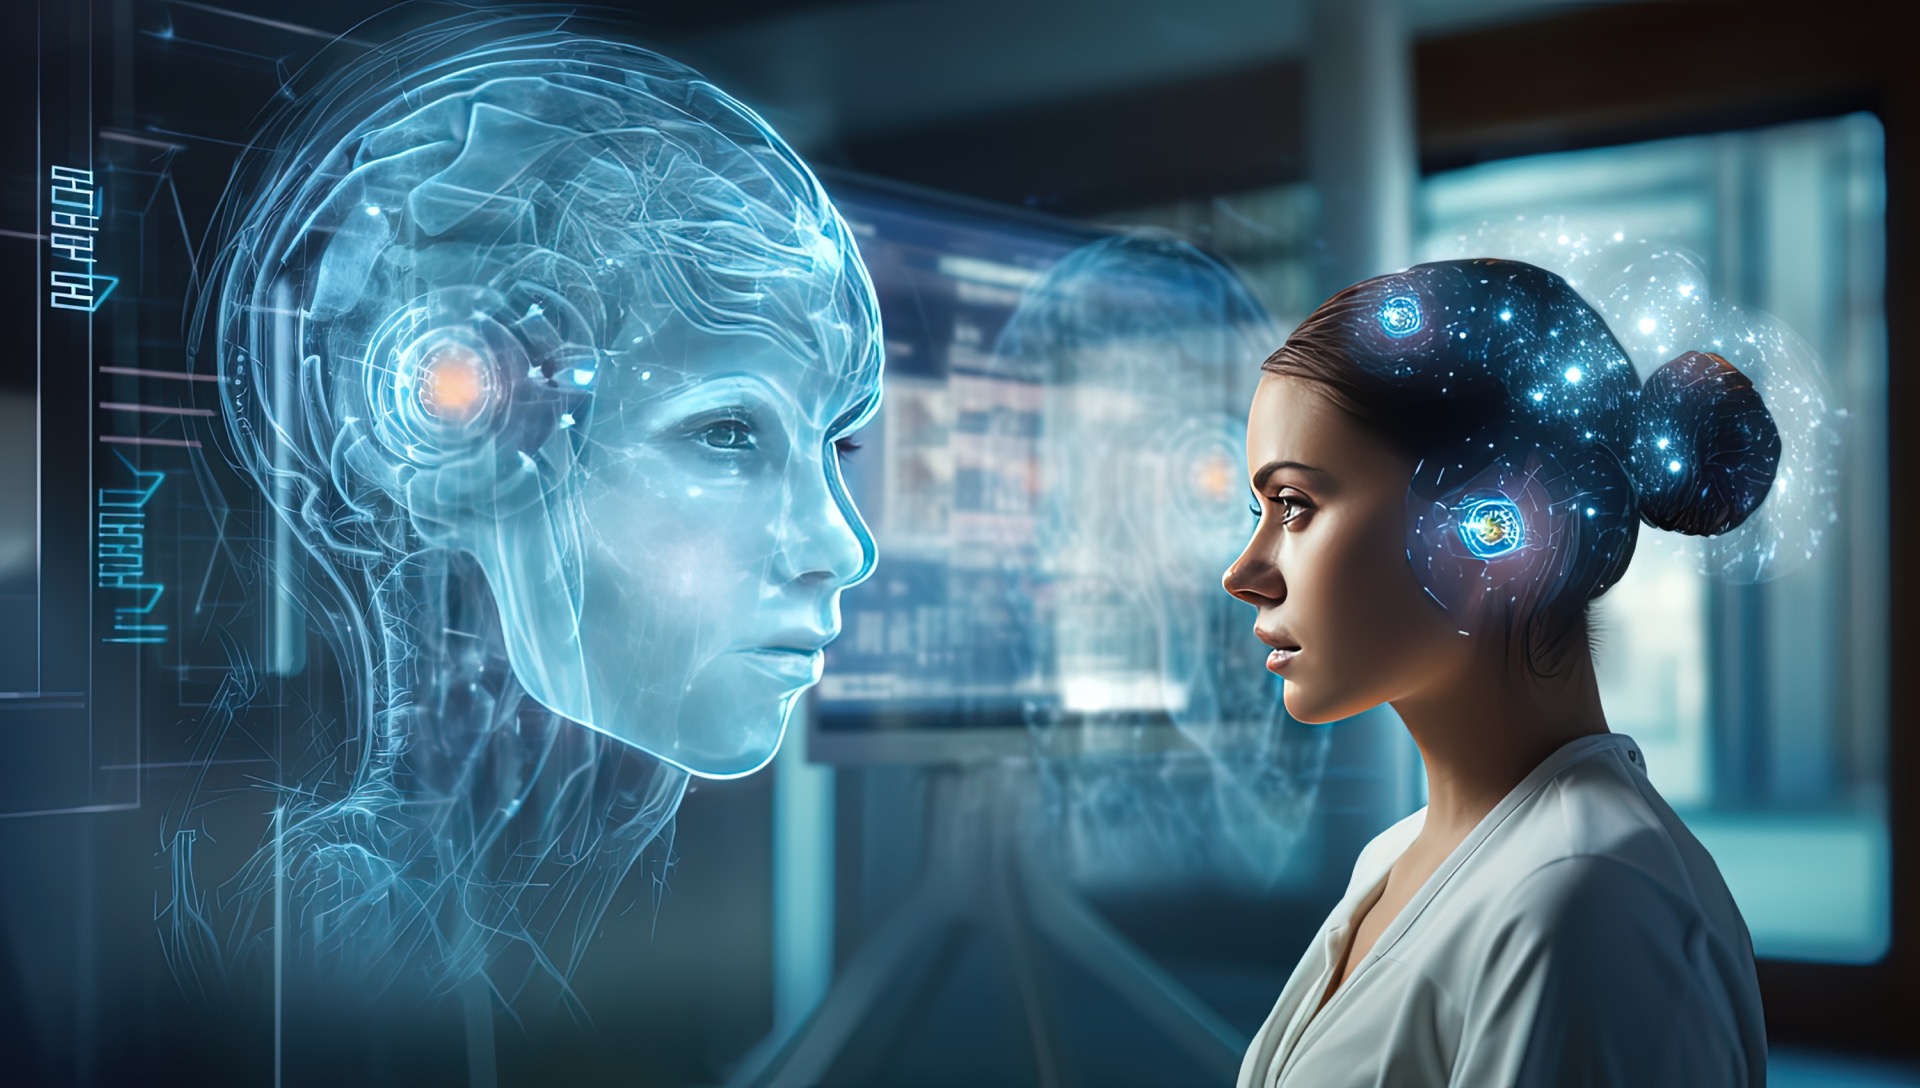 Neuralink, une des entreprises d'Elon Musk, conçoit des appareils connectés à implanter dans le cerveau pour communiquer avec les ordinateurs directement par la pensée. © QuietWord, Adobe Stock